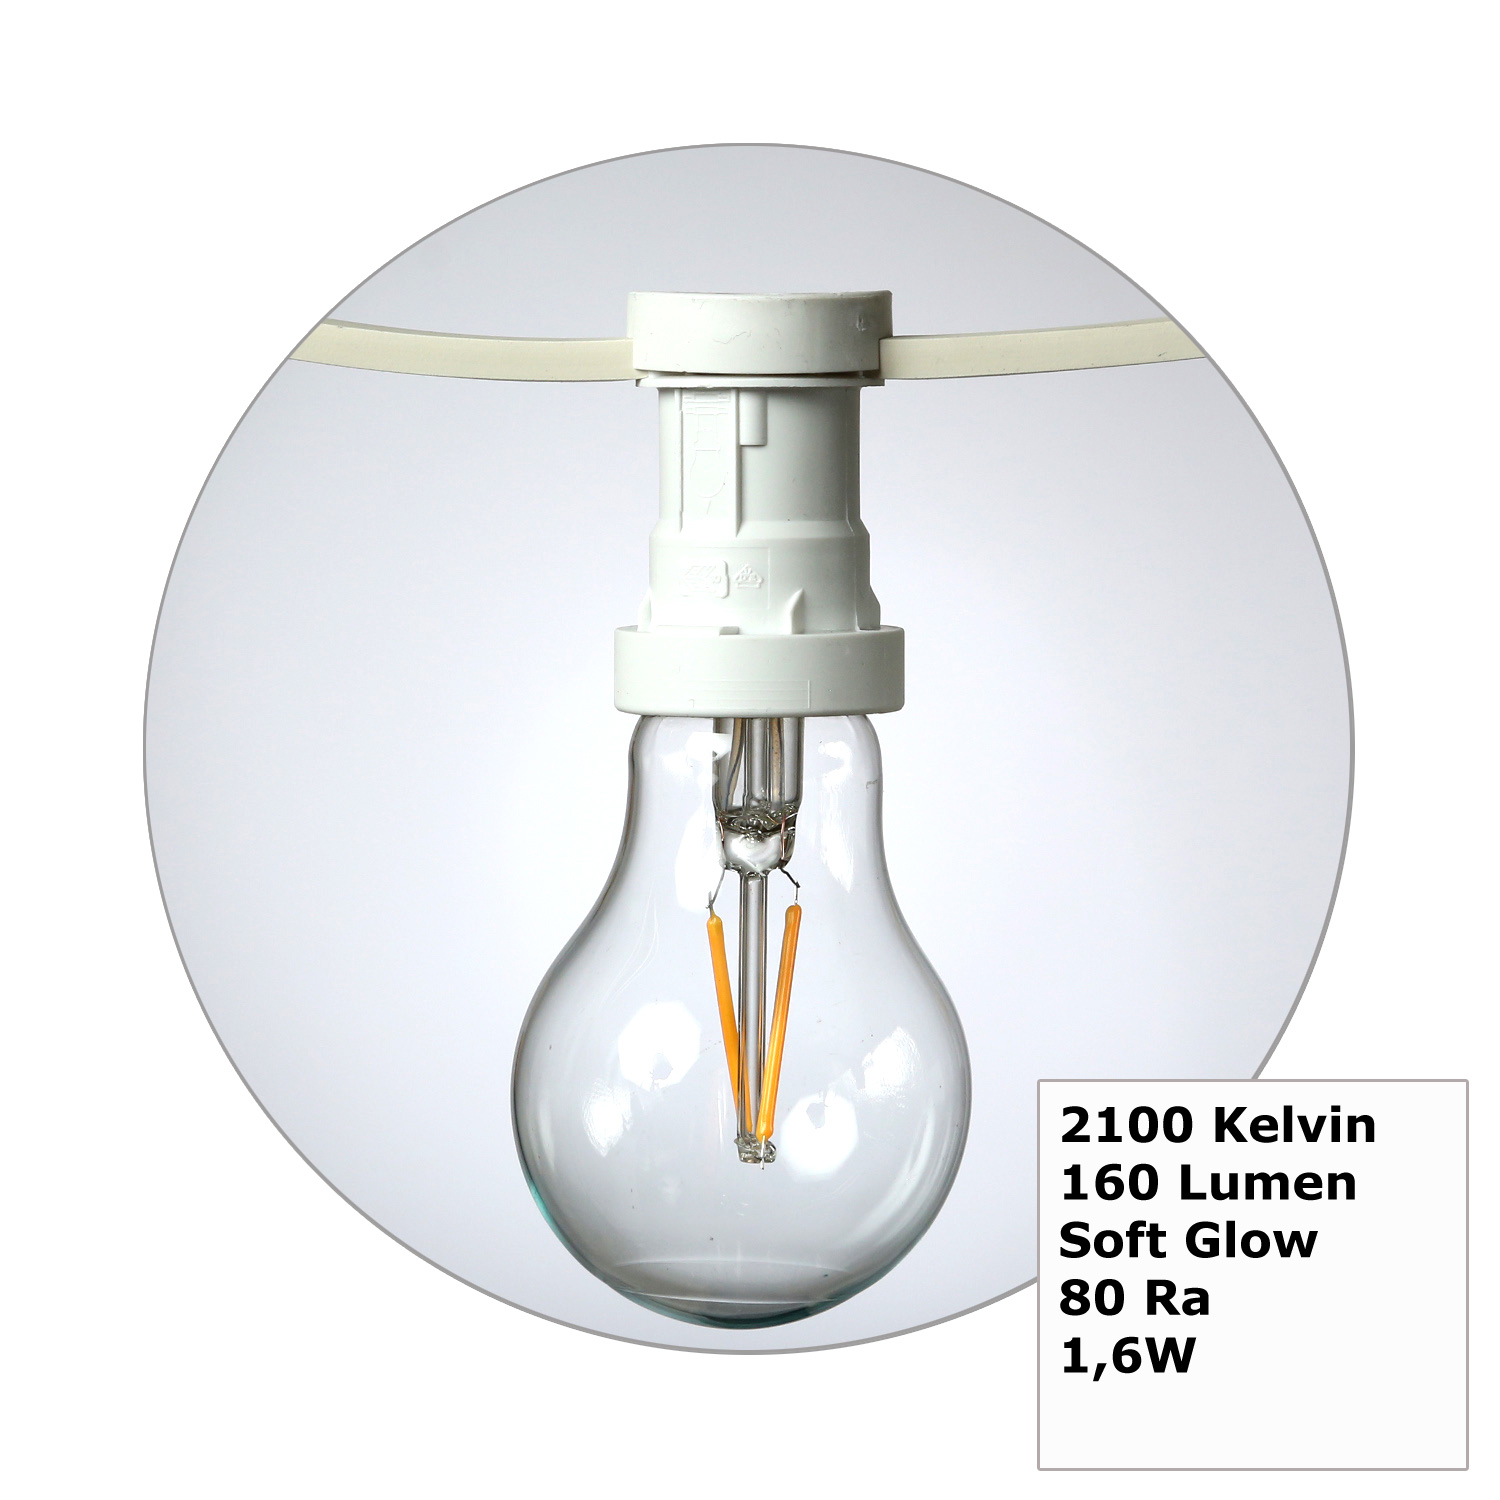 Illu-/Partylichterkette 5m - Außenlichterkette weiß - Made in Germany - 10 Edison LED Filamentlampen